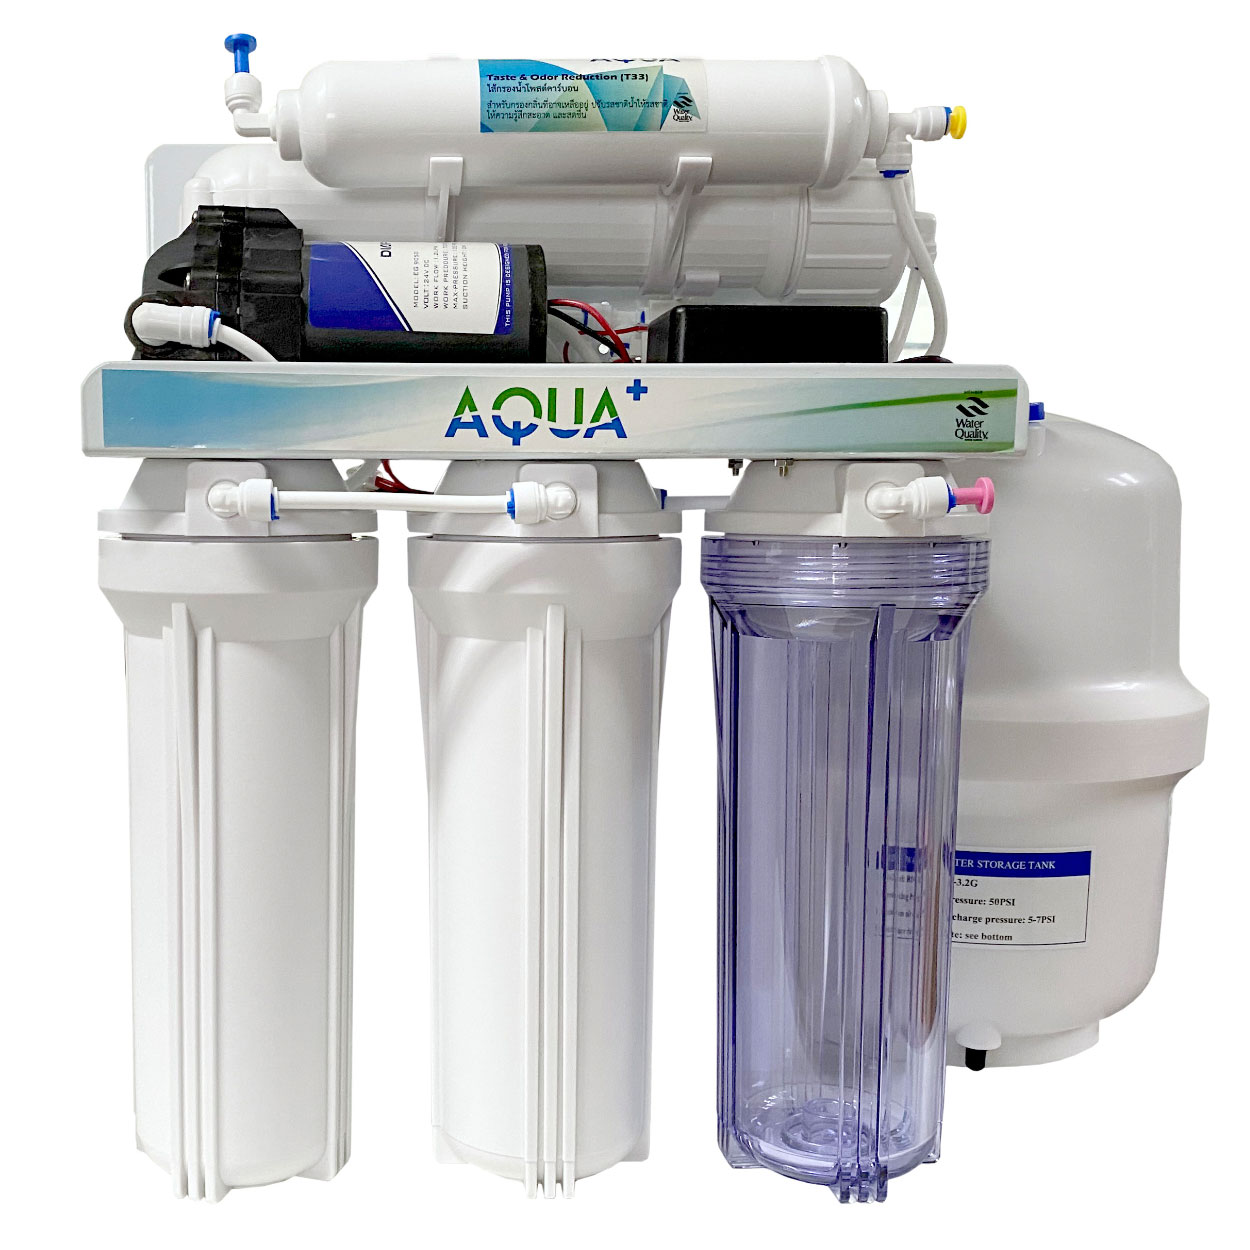 เครื่องกรองน้ำ RO Aqua Plus ขนาด 50 GPD กรองได้ 175 ลิตร/วัน